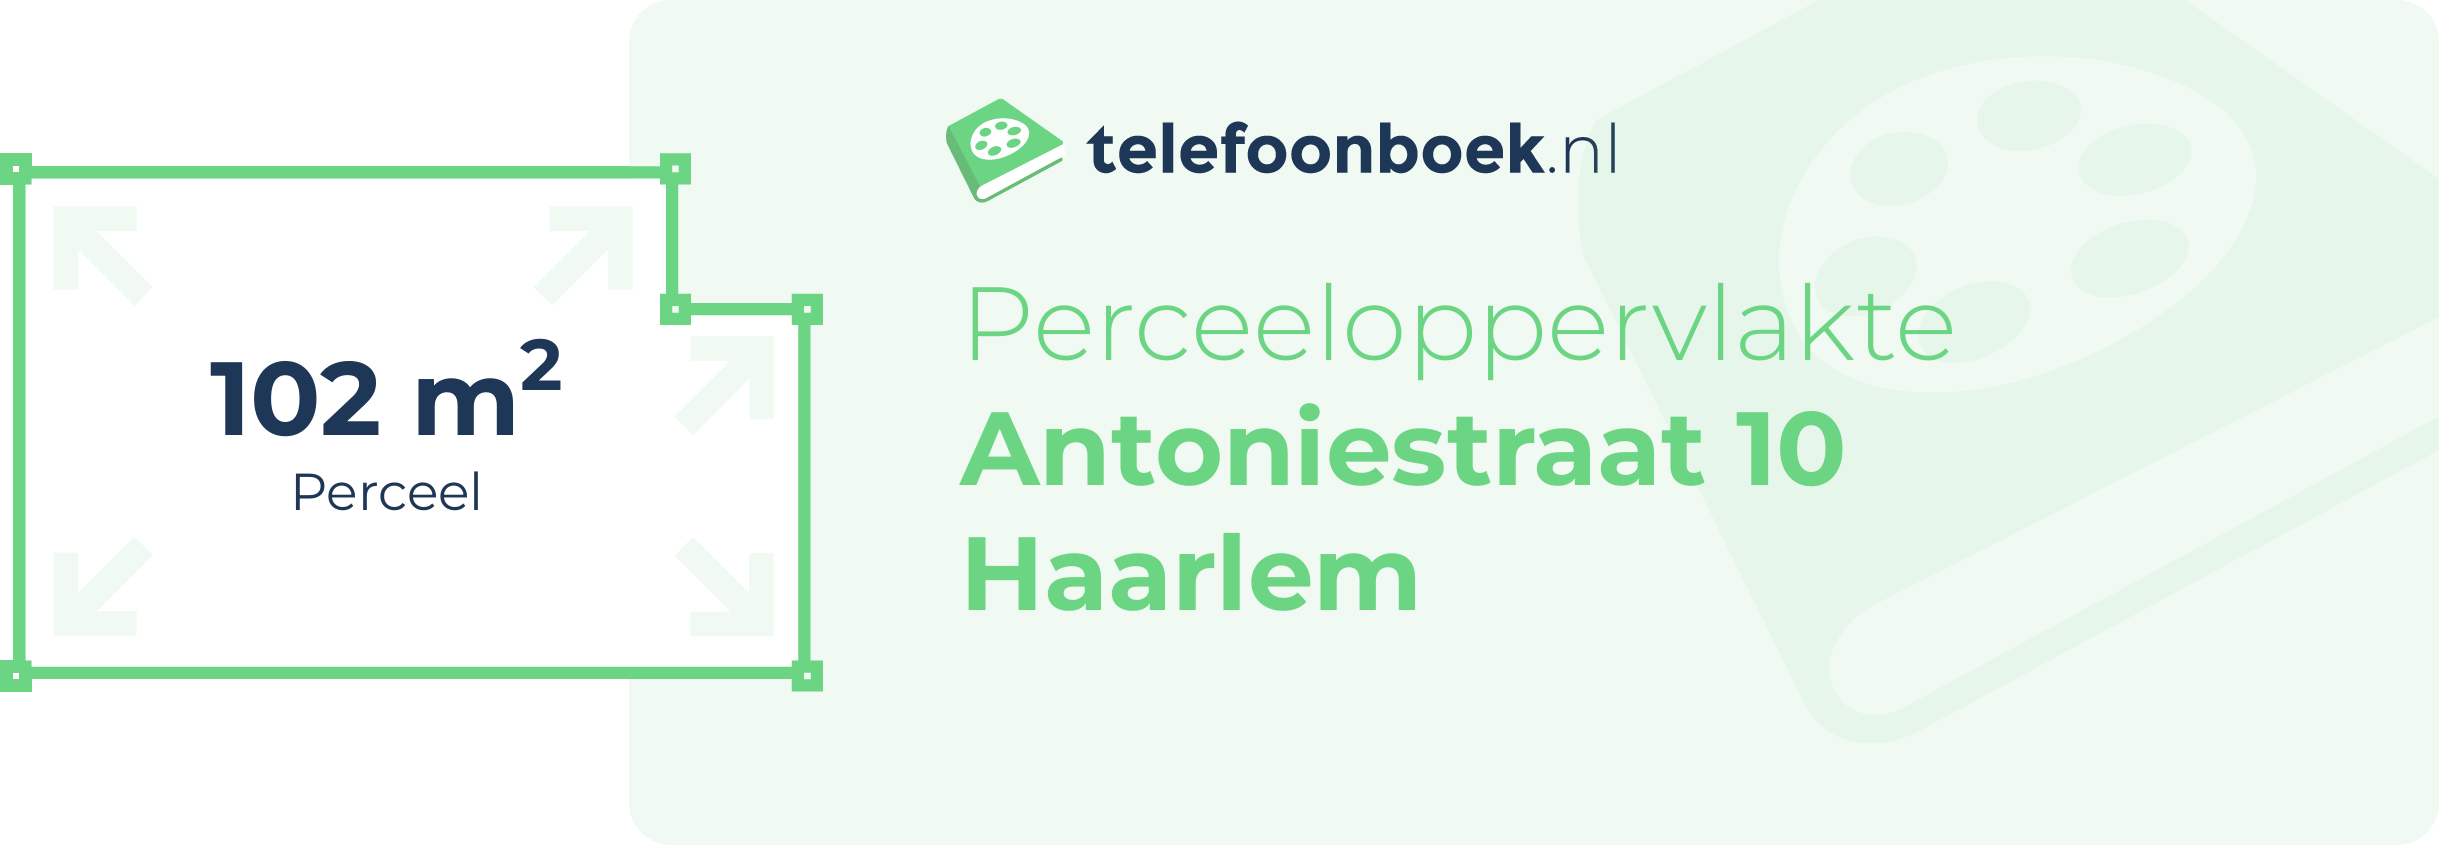 Perceeloppervlakte Antoniestraat 10 Haarlem